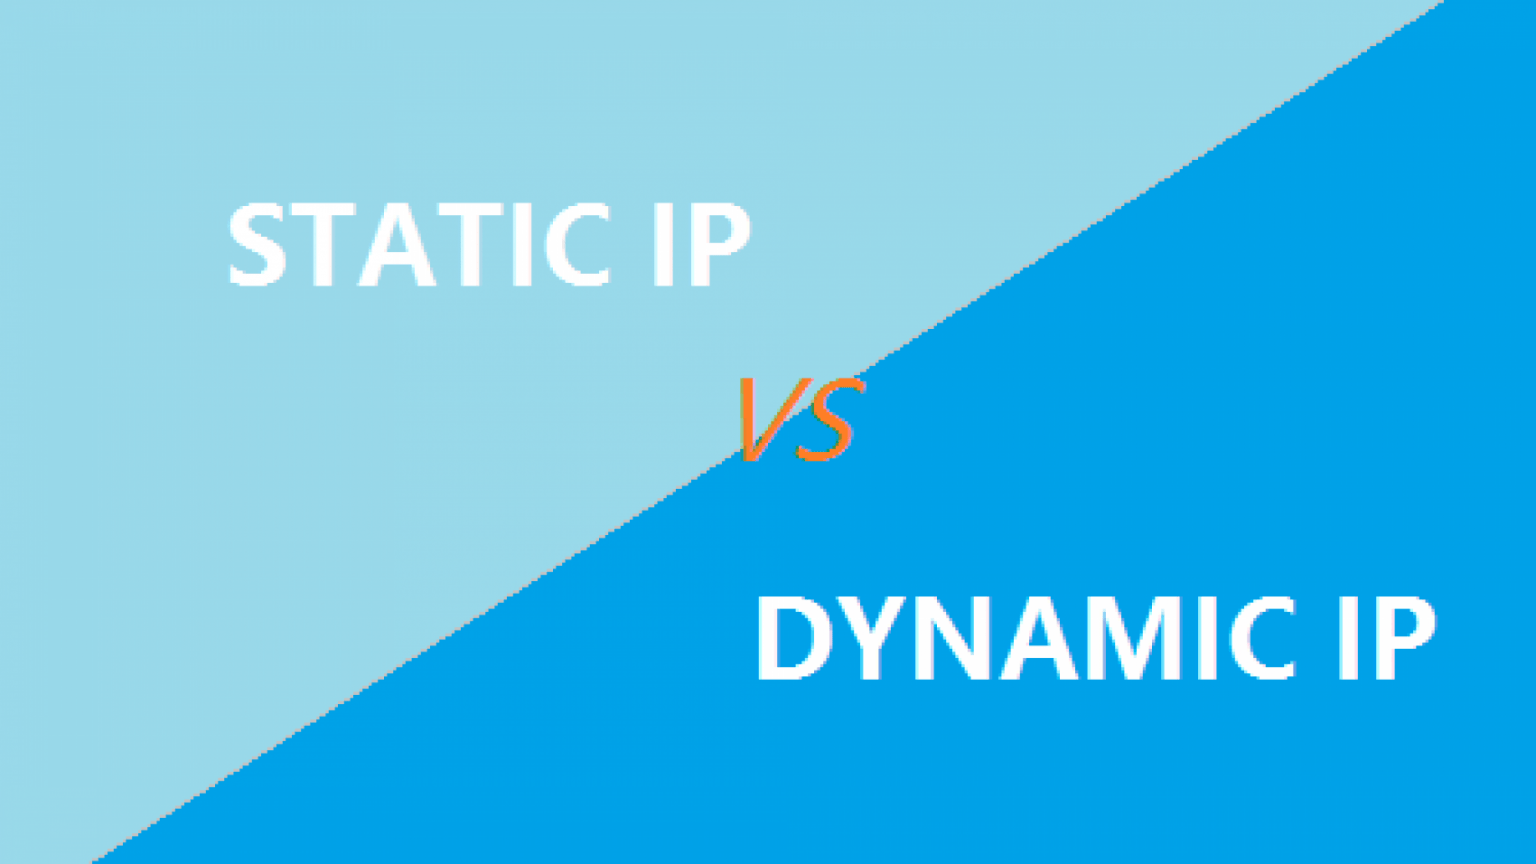 Dynamic vs static. Vs Overlay.